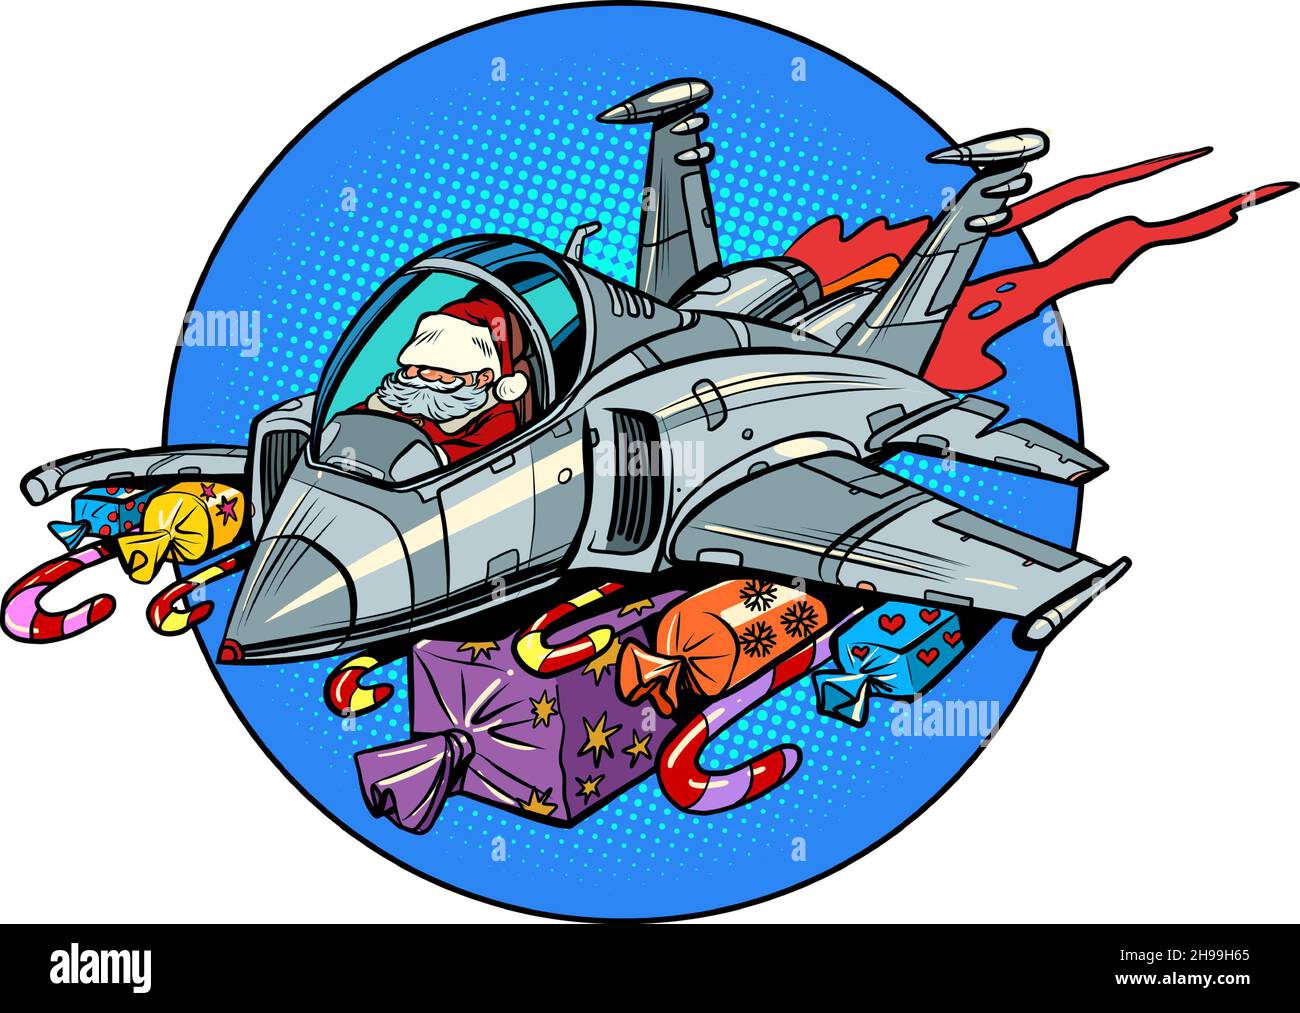 Der Weihnachtsmann fliegt auf einem Sturmtruppen-Flugzeug mit Geschenken anstelle von Bomben. Weihnachten und Neujahr Winterferien Stock Vektor